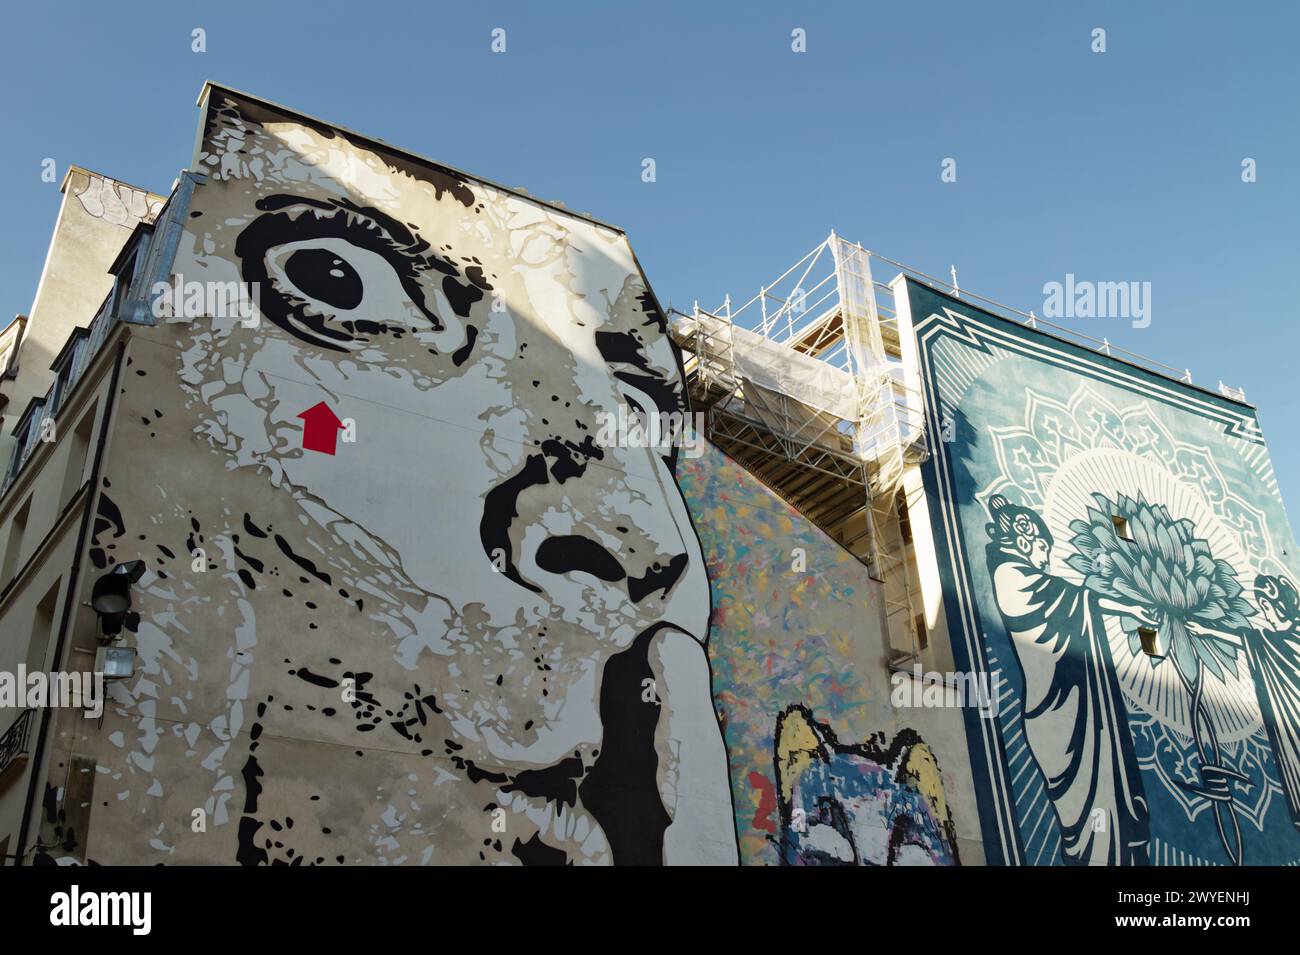 Grandes peintures murales Street Art, Chuutt par Jef aérosol et connaissance + action = puissance par Shepard Fairey aka Obey, place Stravinsky, Paris France Banque D'Images